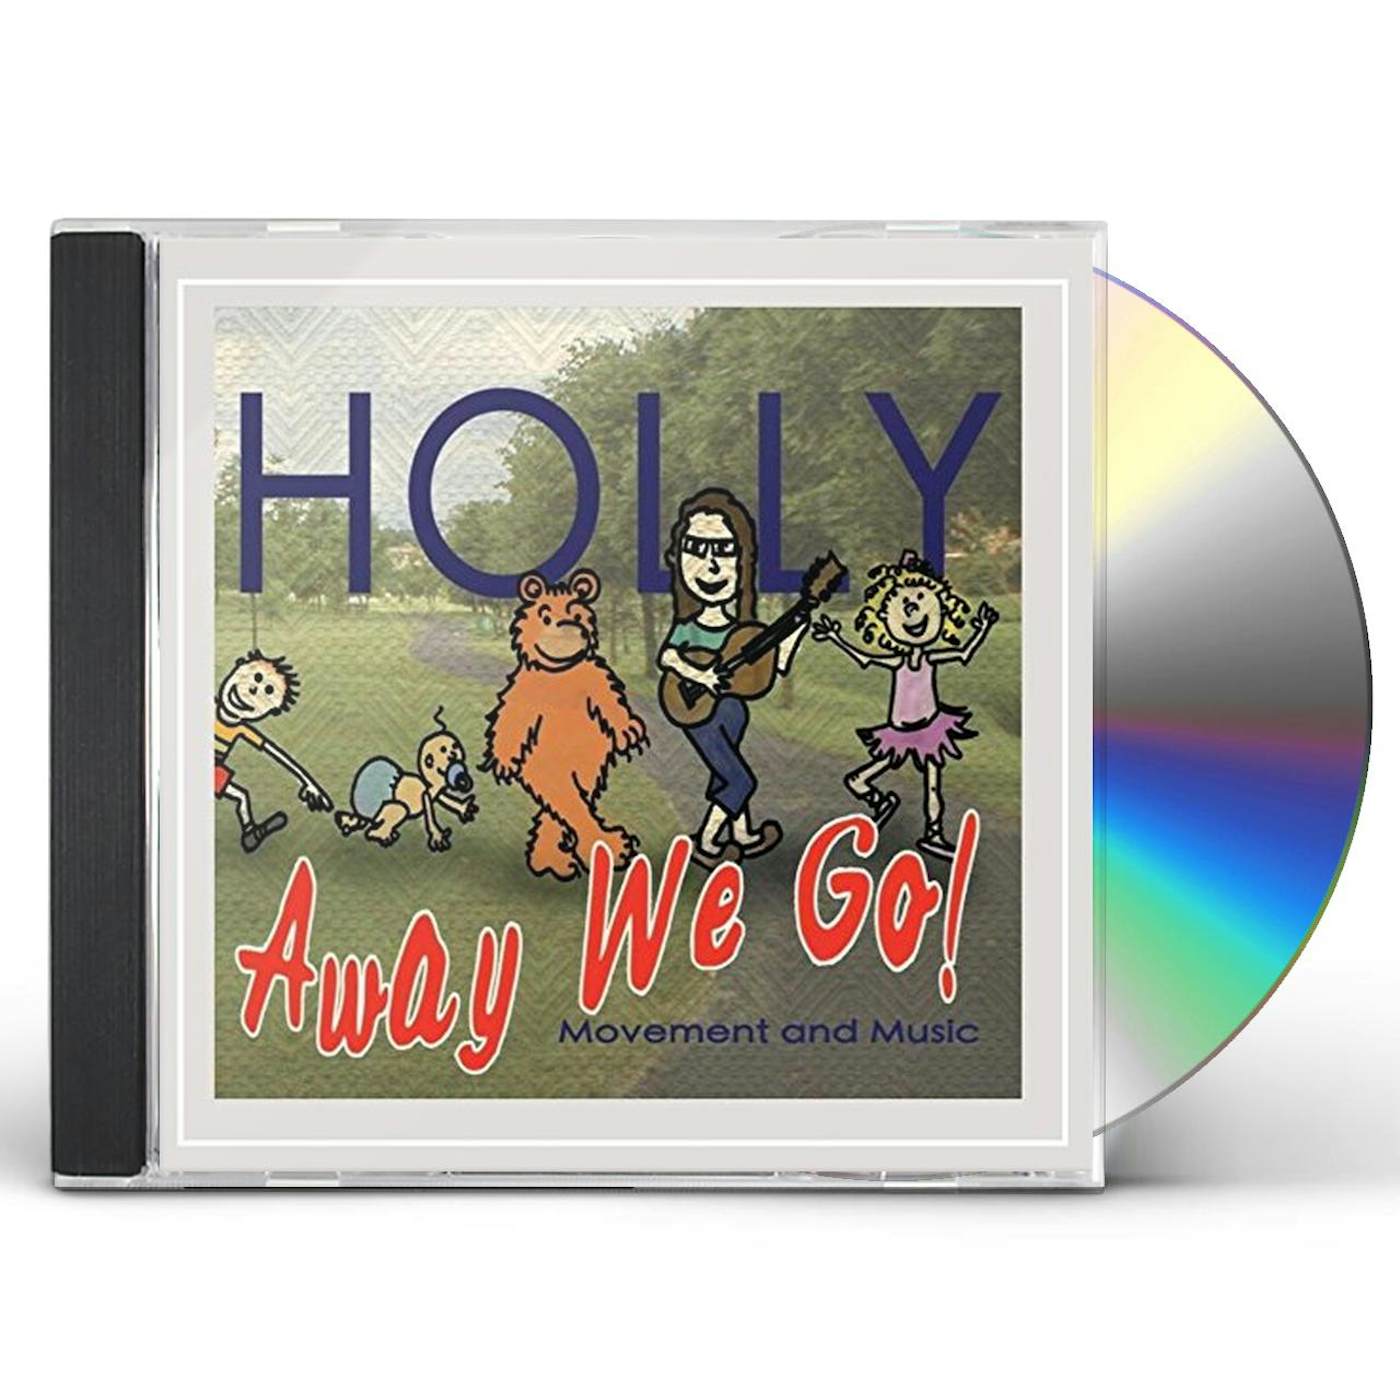 HOLLY AWAY WE GO CD